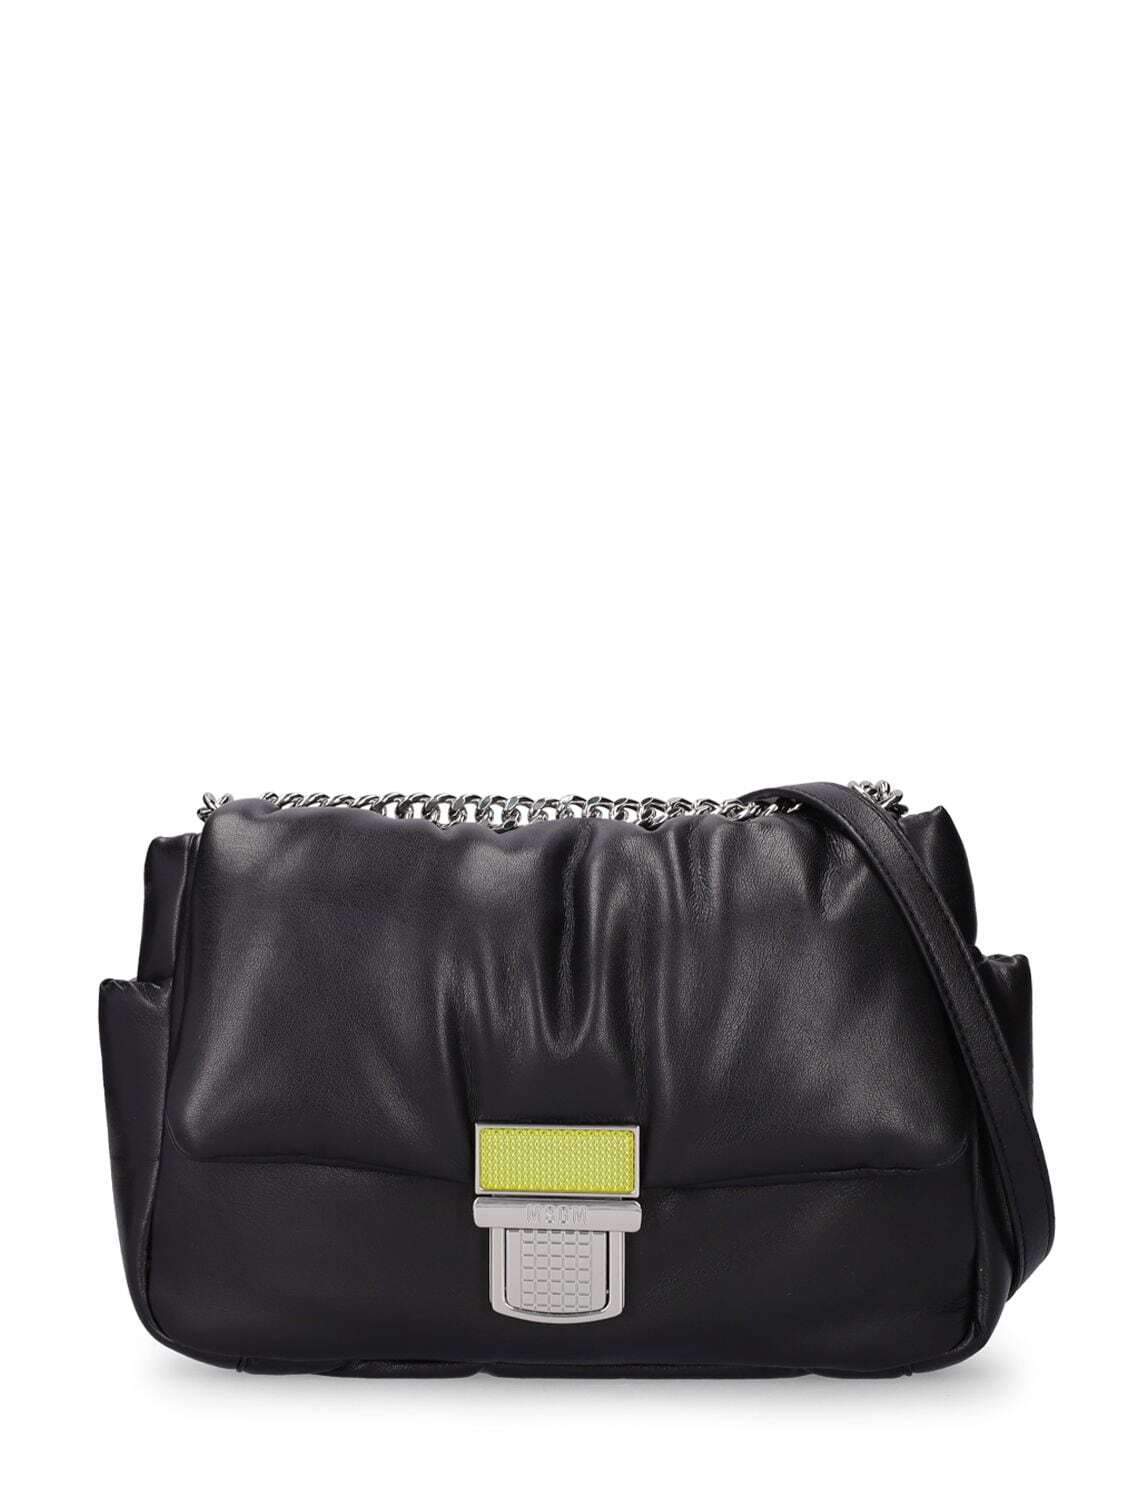 MSGM Padded Shoulder Bag in black